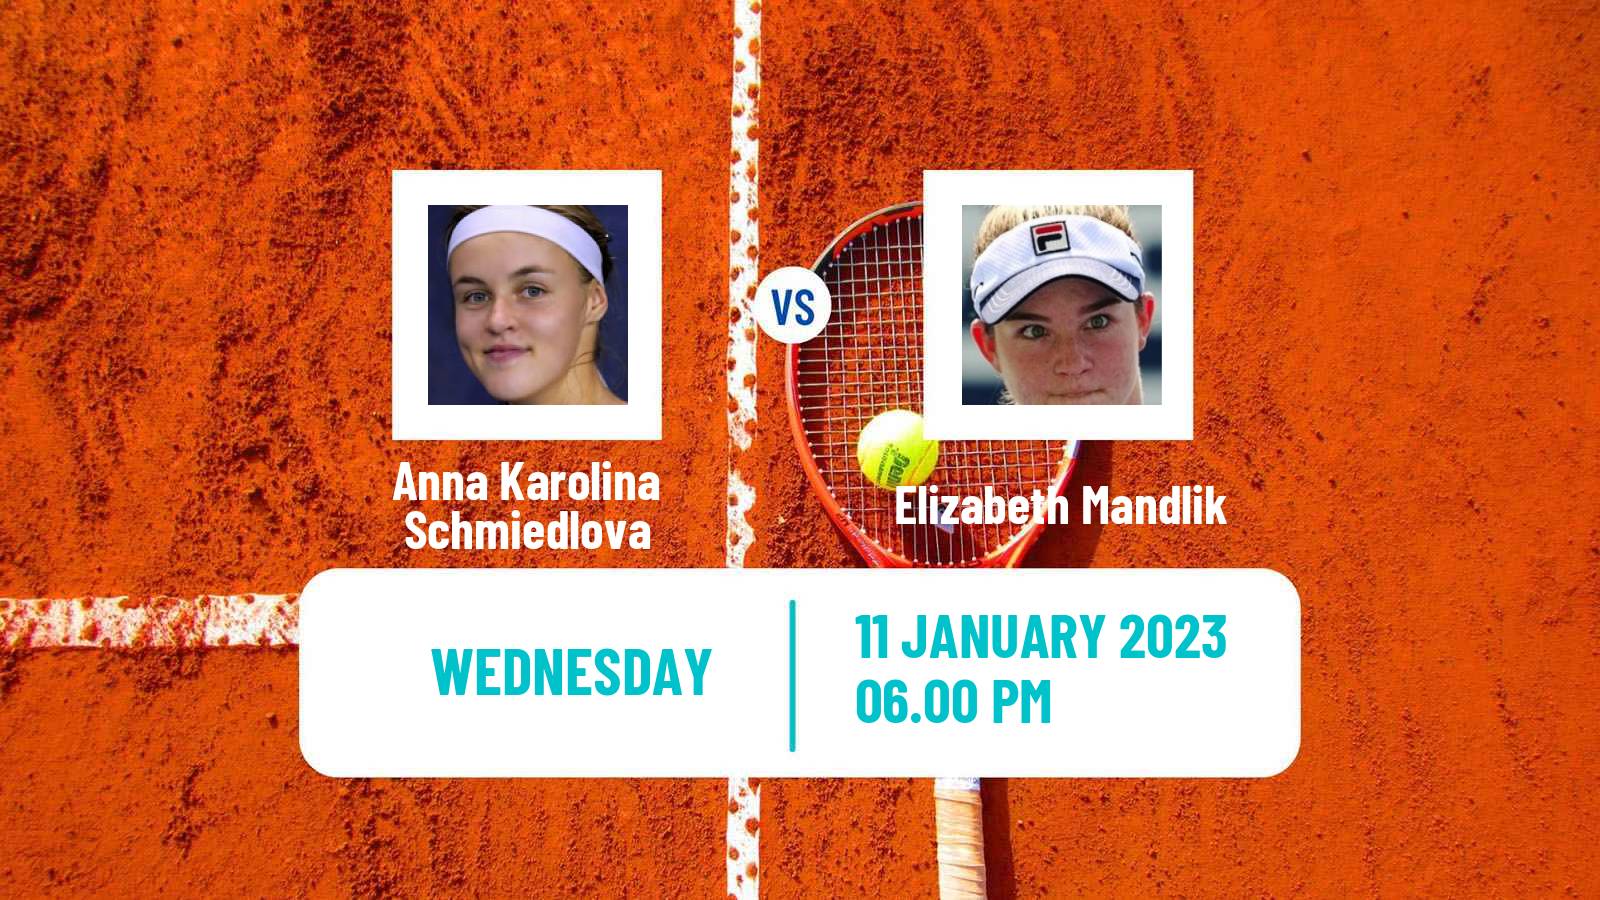 Tennis WTA Australian Open Anna Karolina Schmiedlova - Elizabeth Mandlik